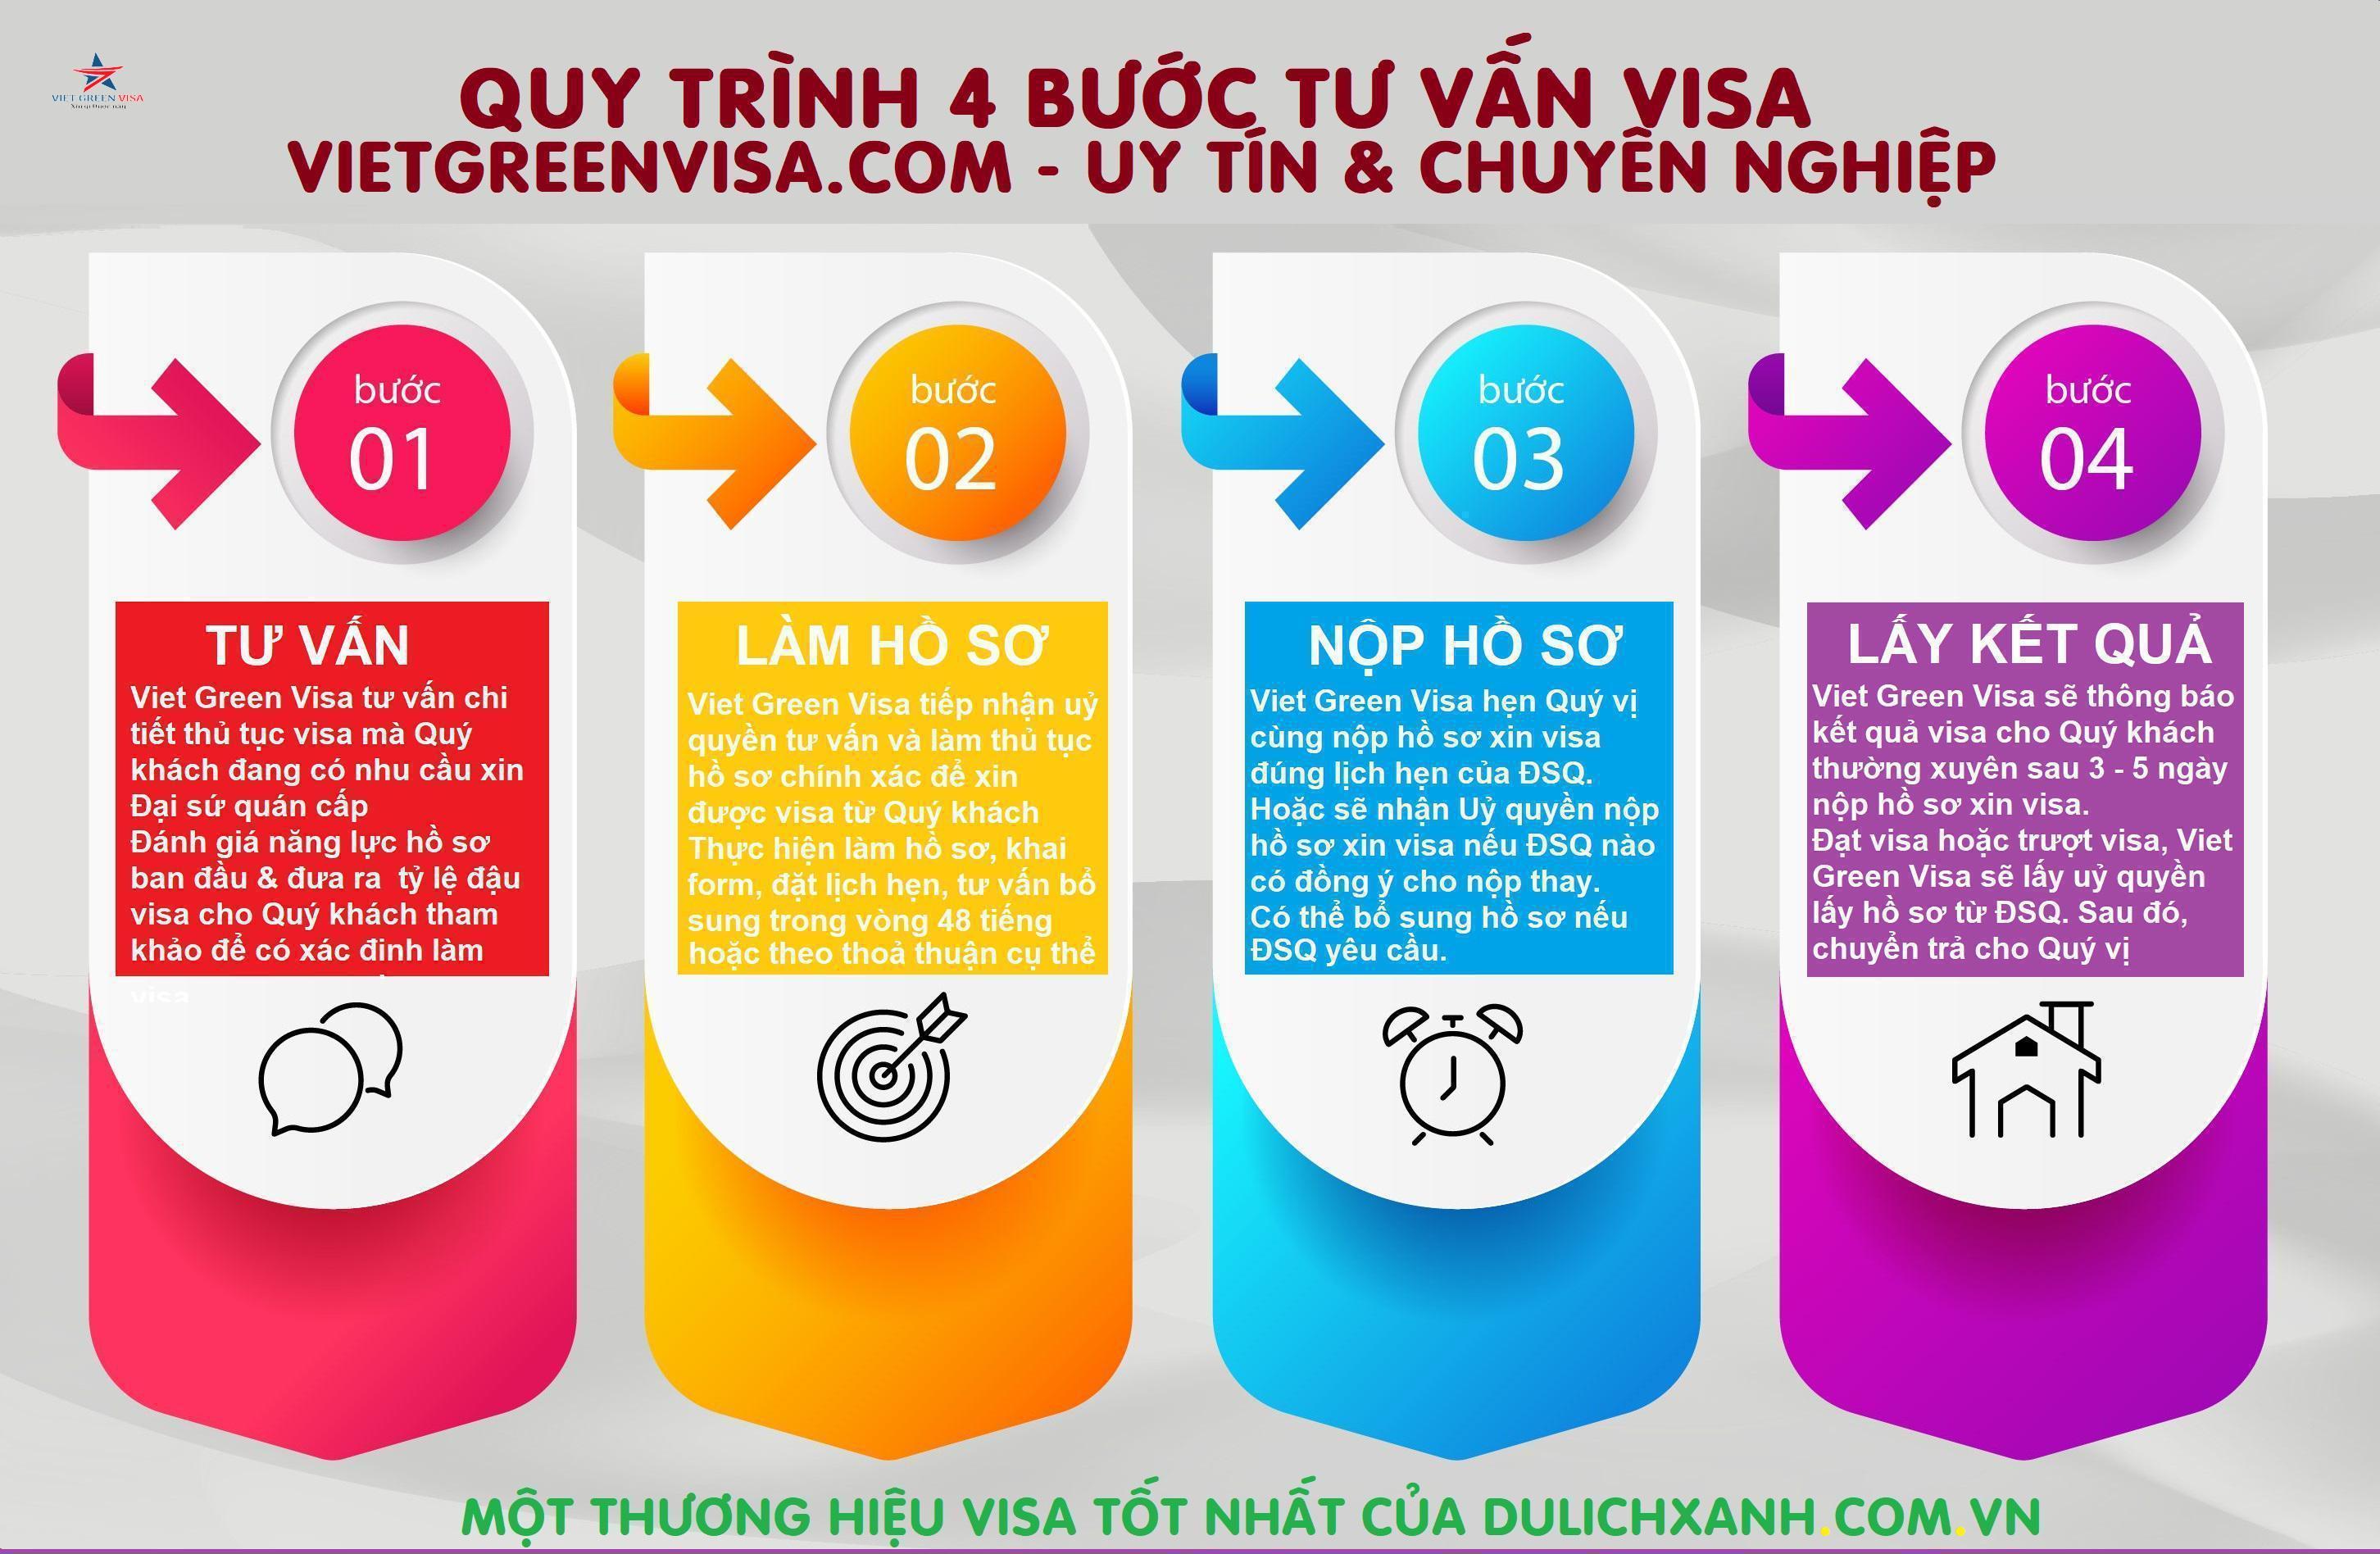 Dịch vụ Visa Macao Hưng Yên giá rẻ chất lượng